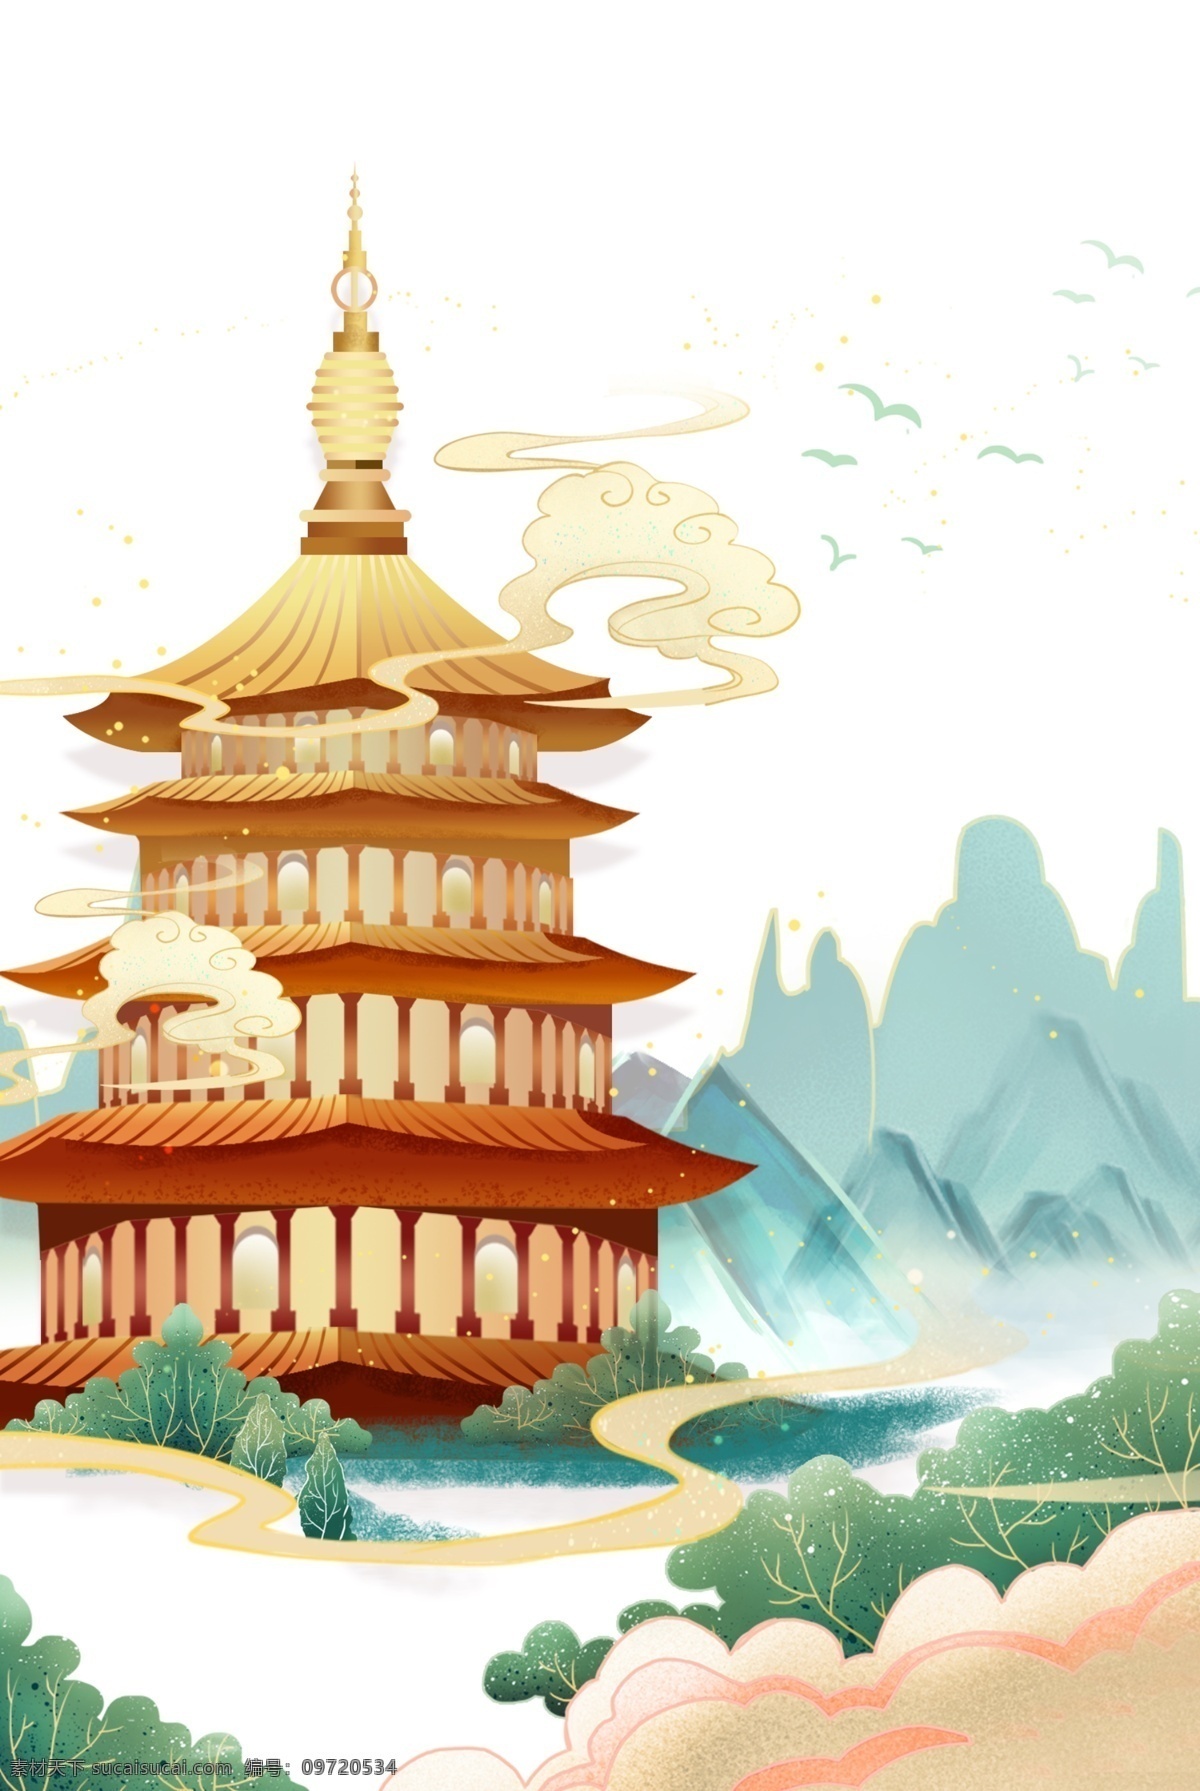 中国 风 绘画 建筑 塔 中国风 手绘 中国建筑 中国元素 山水 祥云 古塔 分层